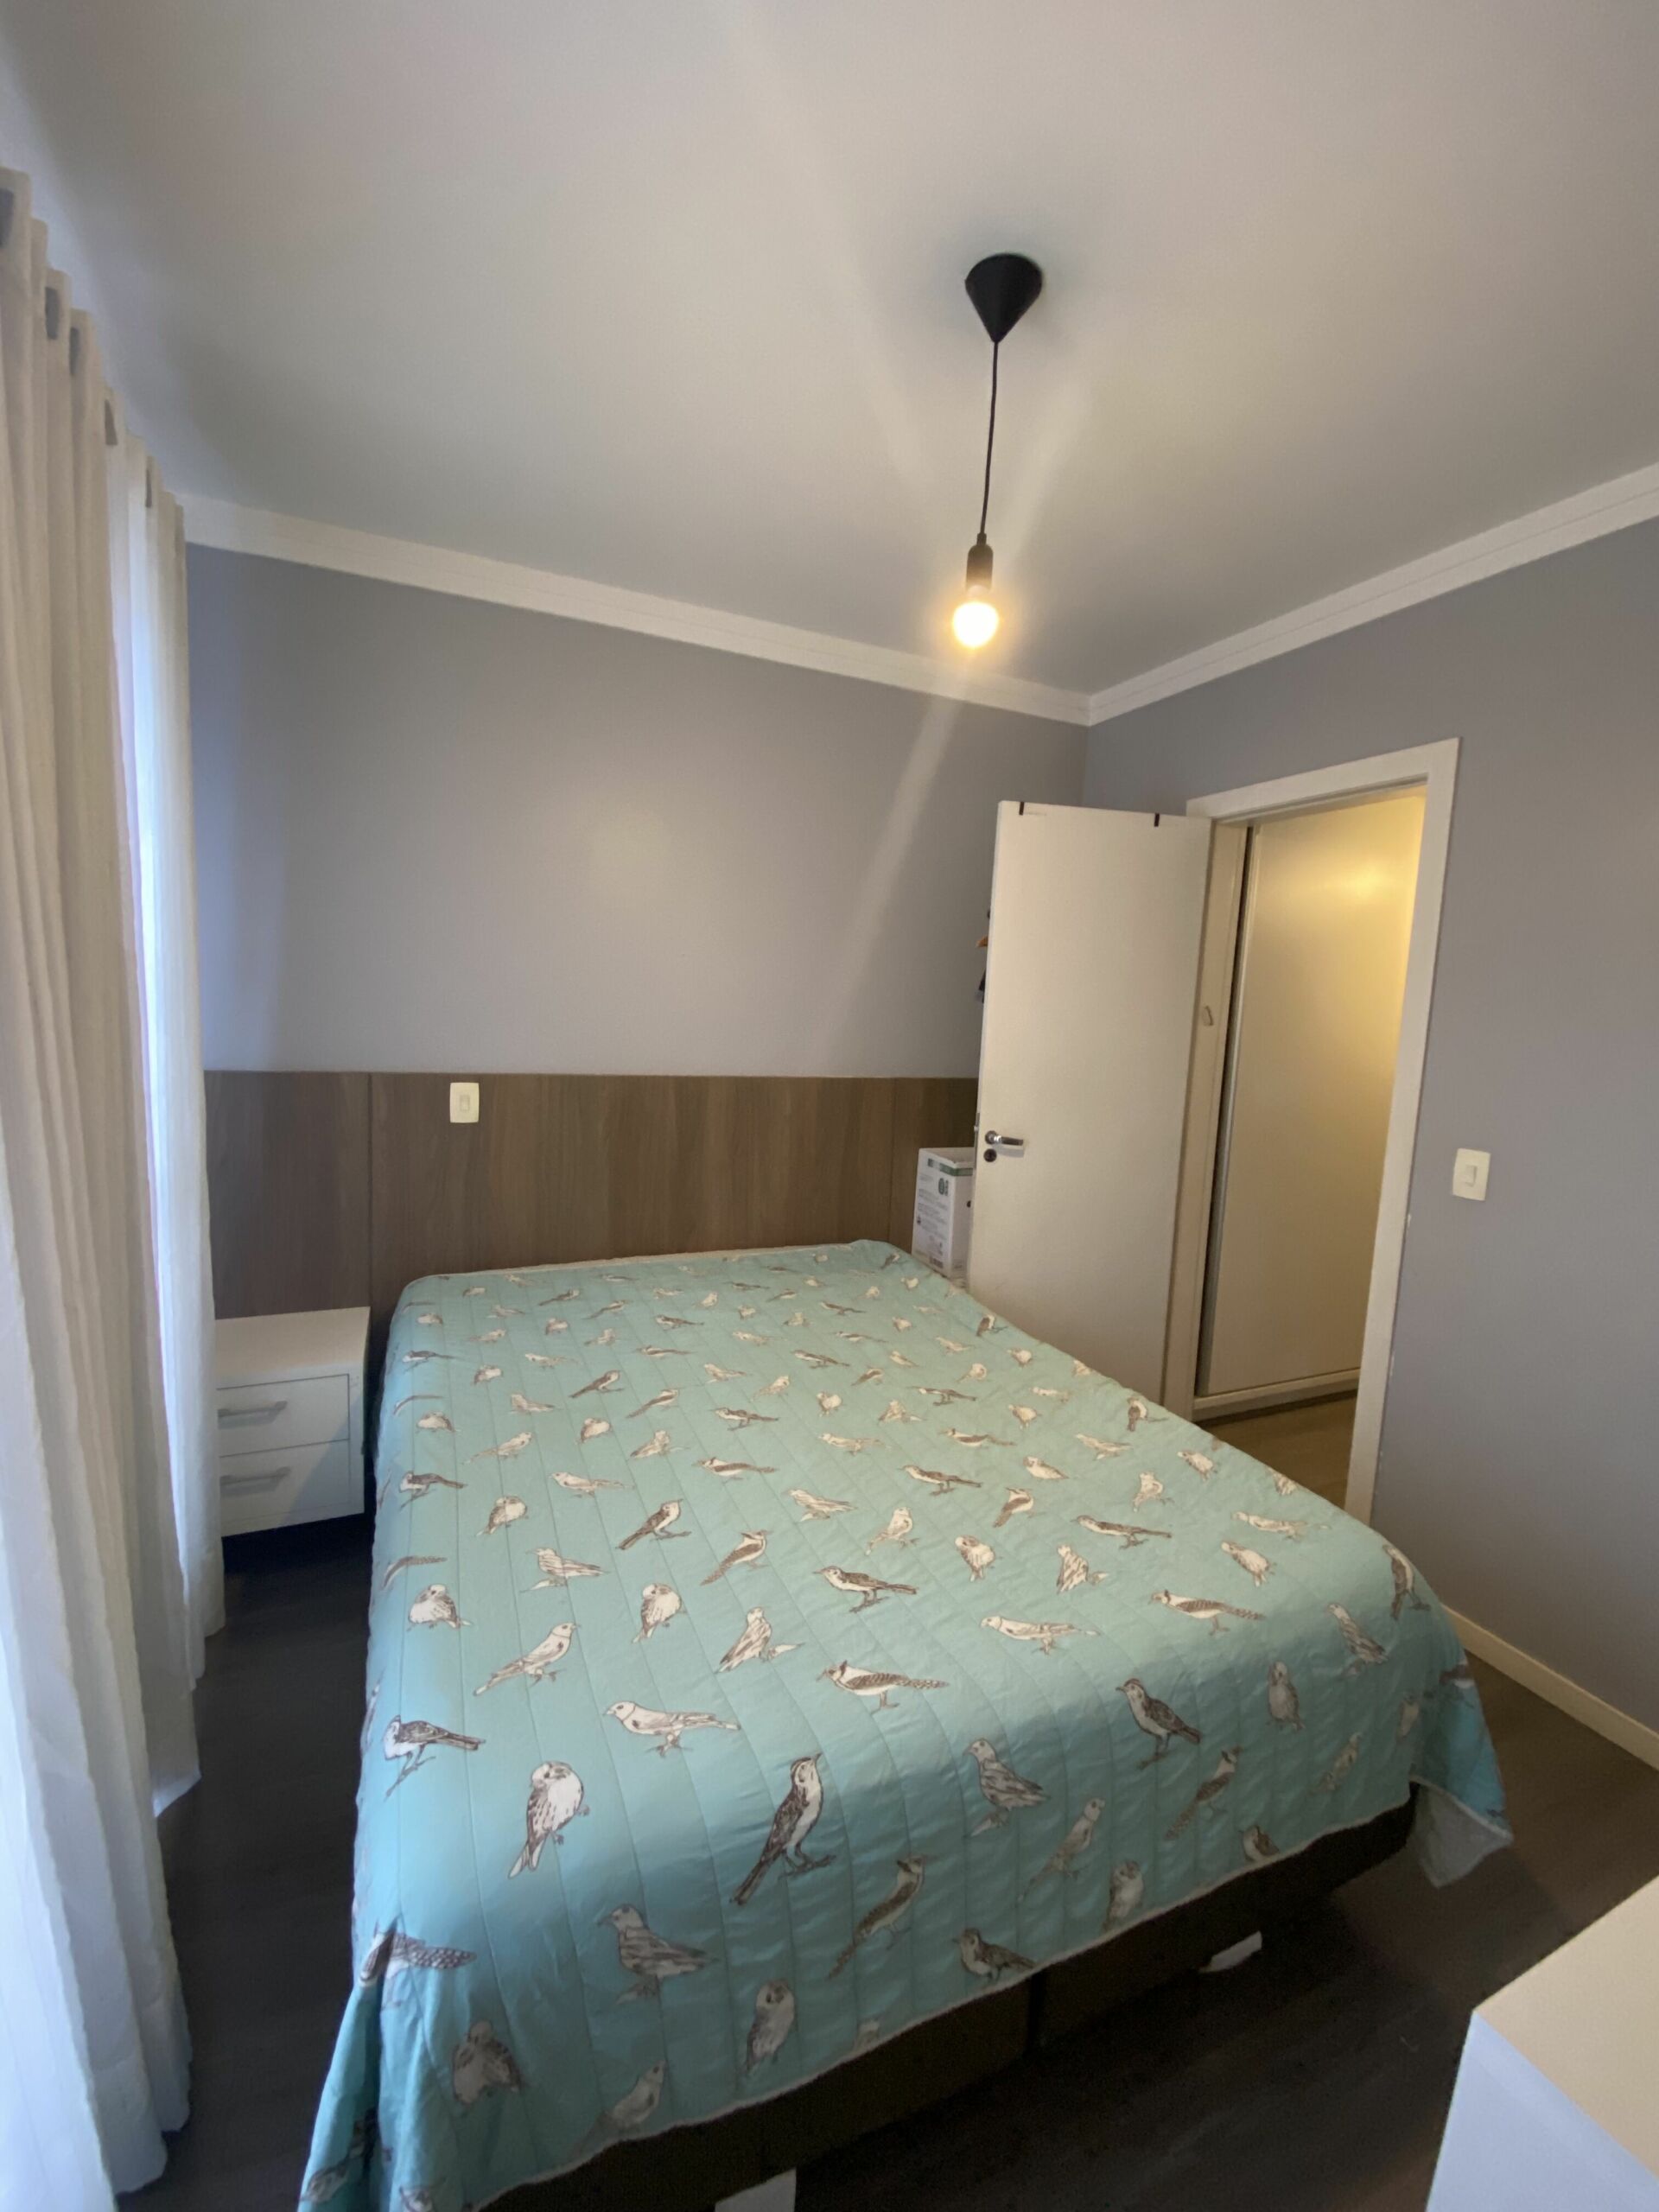 Apartamento semi-mobiliado com 1 suite + 1 dormitório – Residencial Aquila